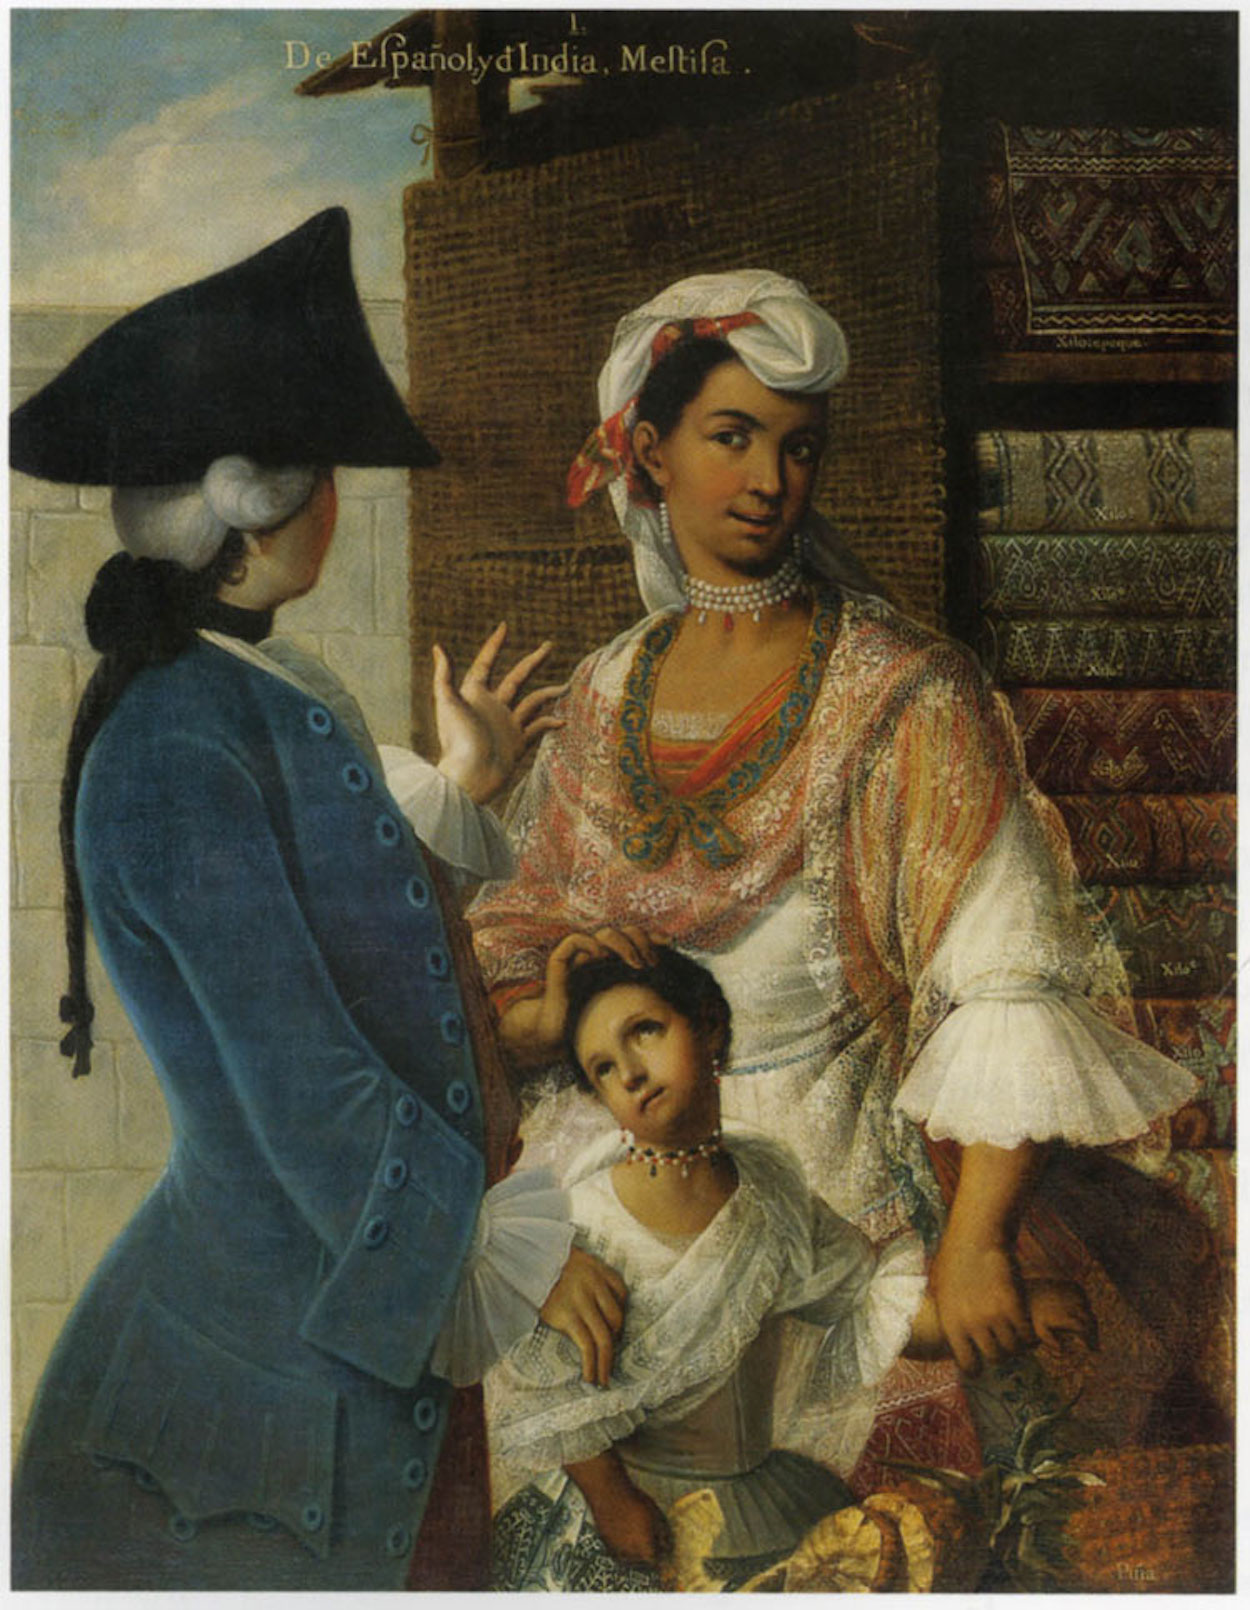 De Espagnõl e India, Mestiza by Miguel Mateo Maldonado y Cabrera - cca. 1763 